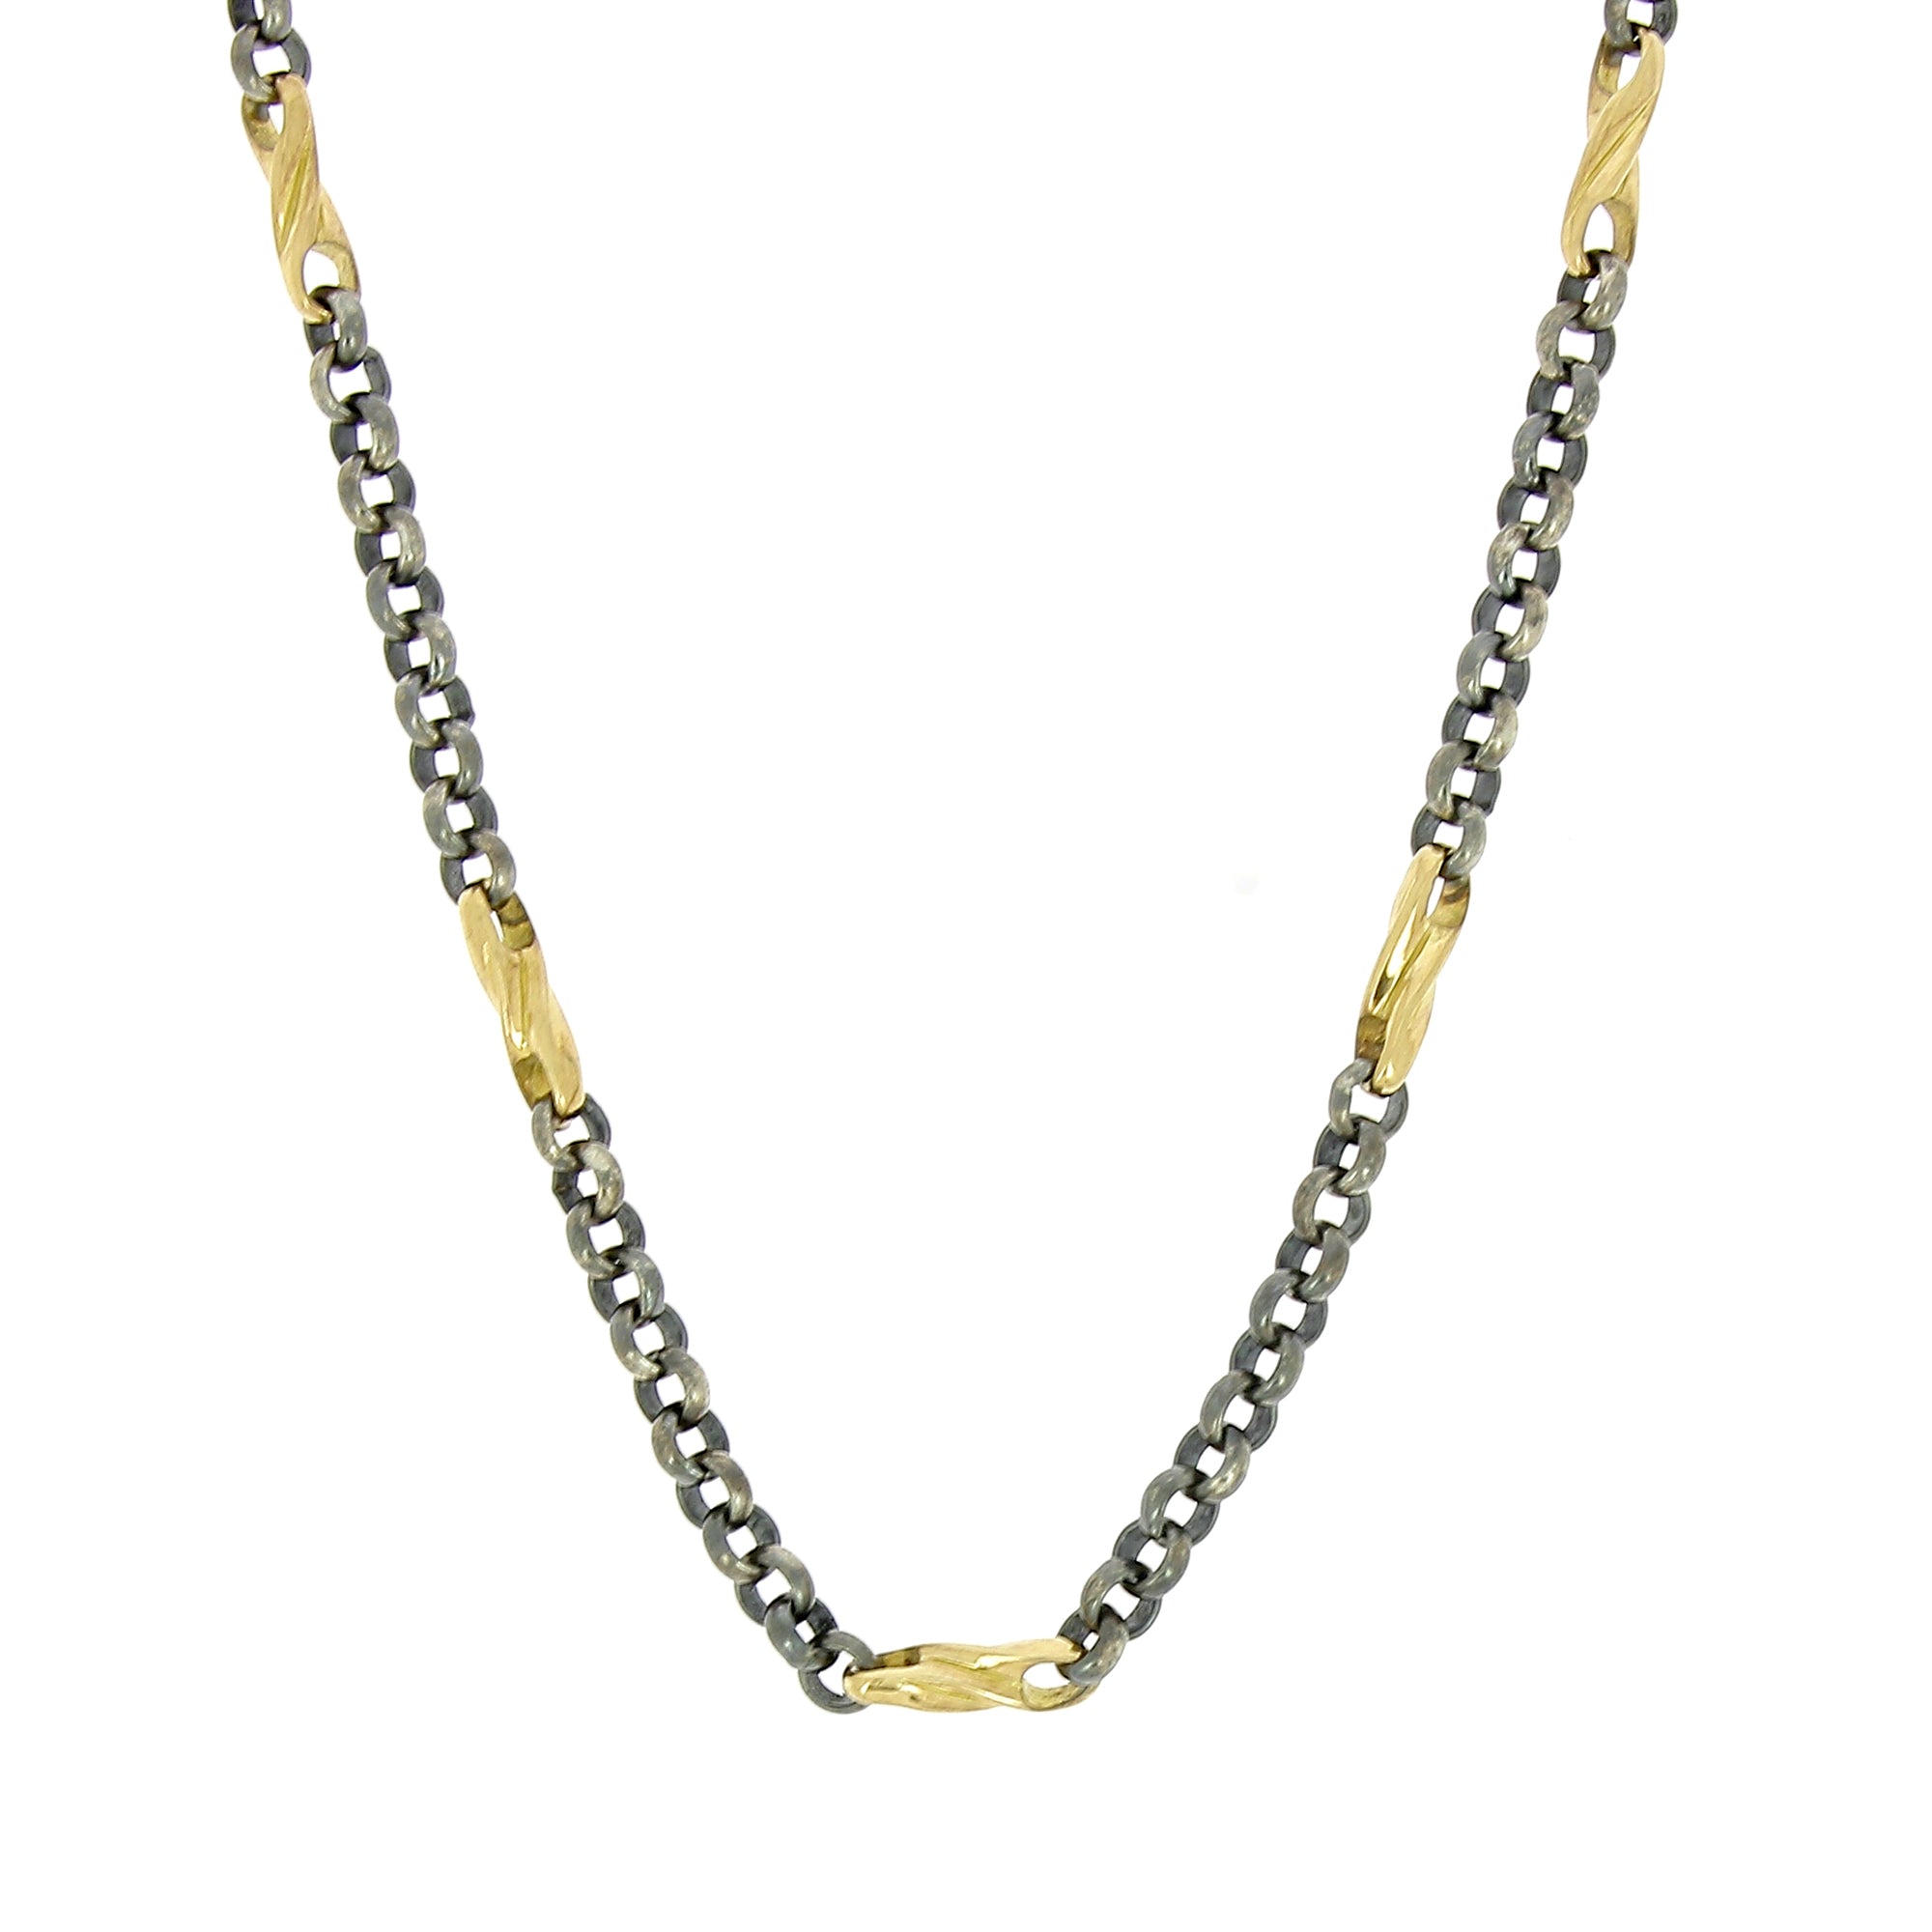 Halskette mit Kettengliedern aus Silber und Gelbgold